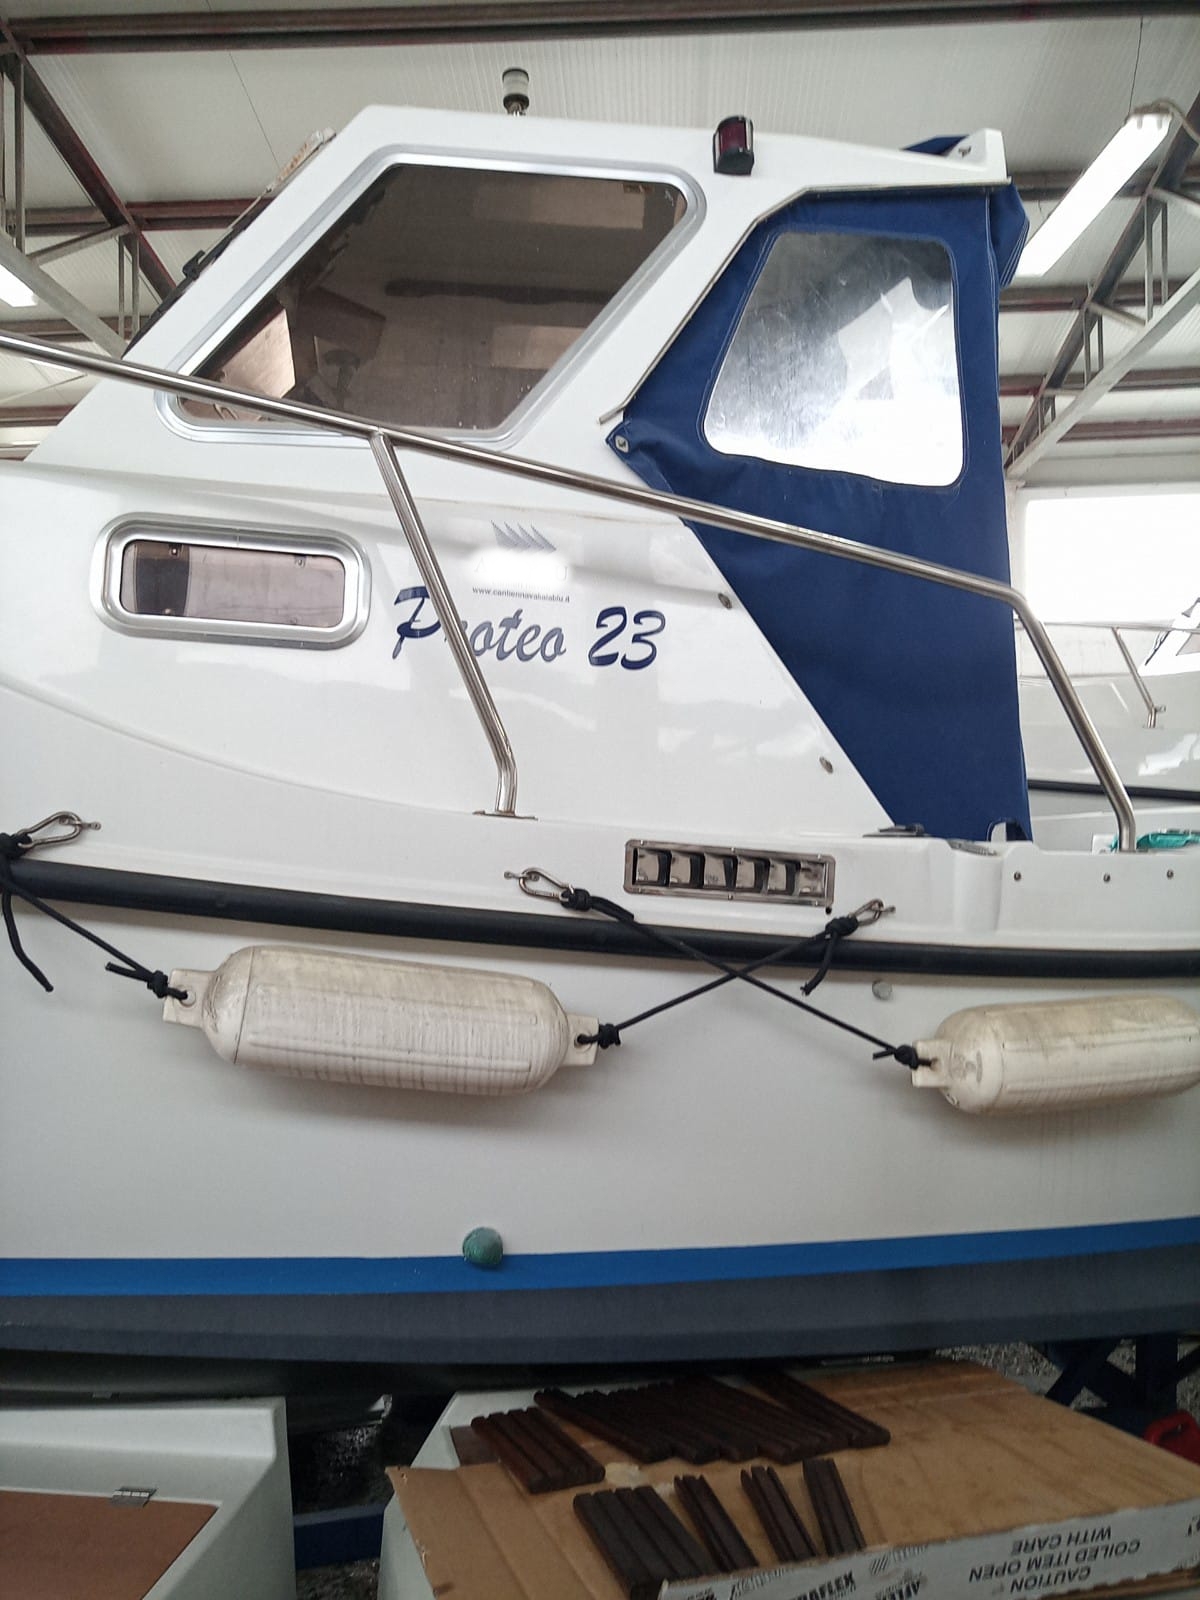 Proteo 23 + Aifo 80 hp ala blu pilotina livorno boats natante boat barco bateaux refitting 2023 entrobordo diesel